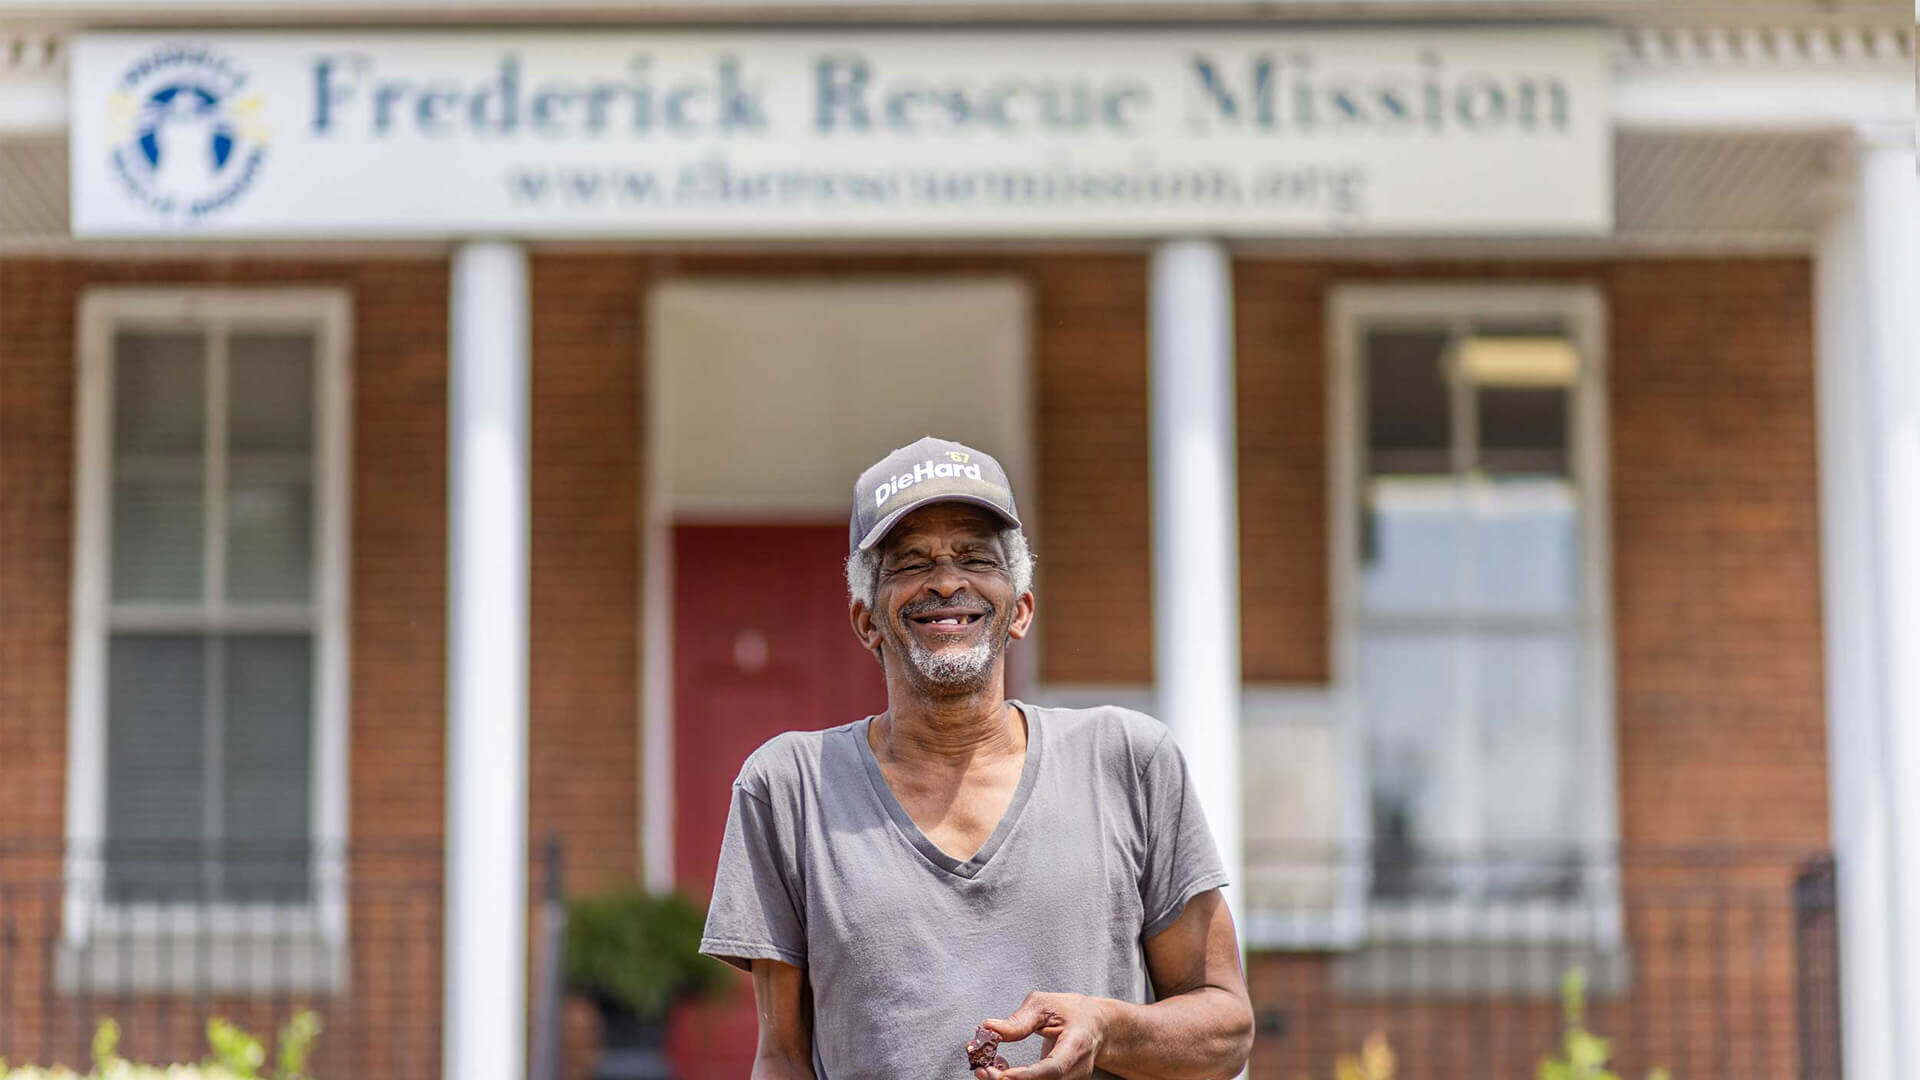 Frederick Rescue Mission